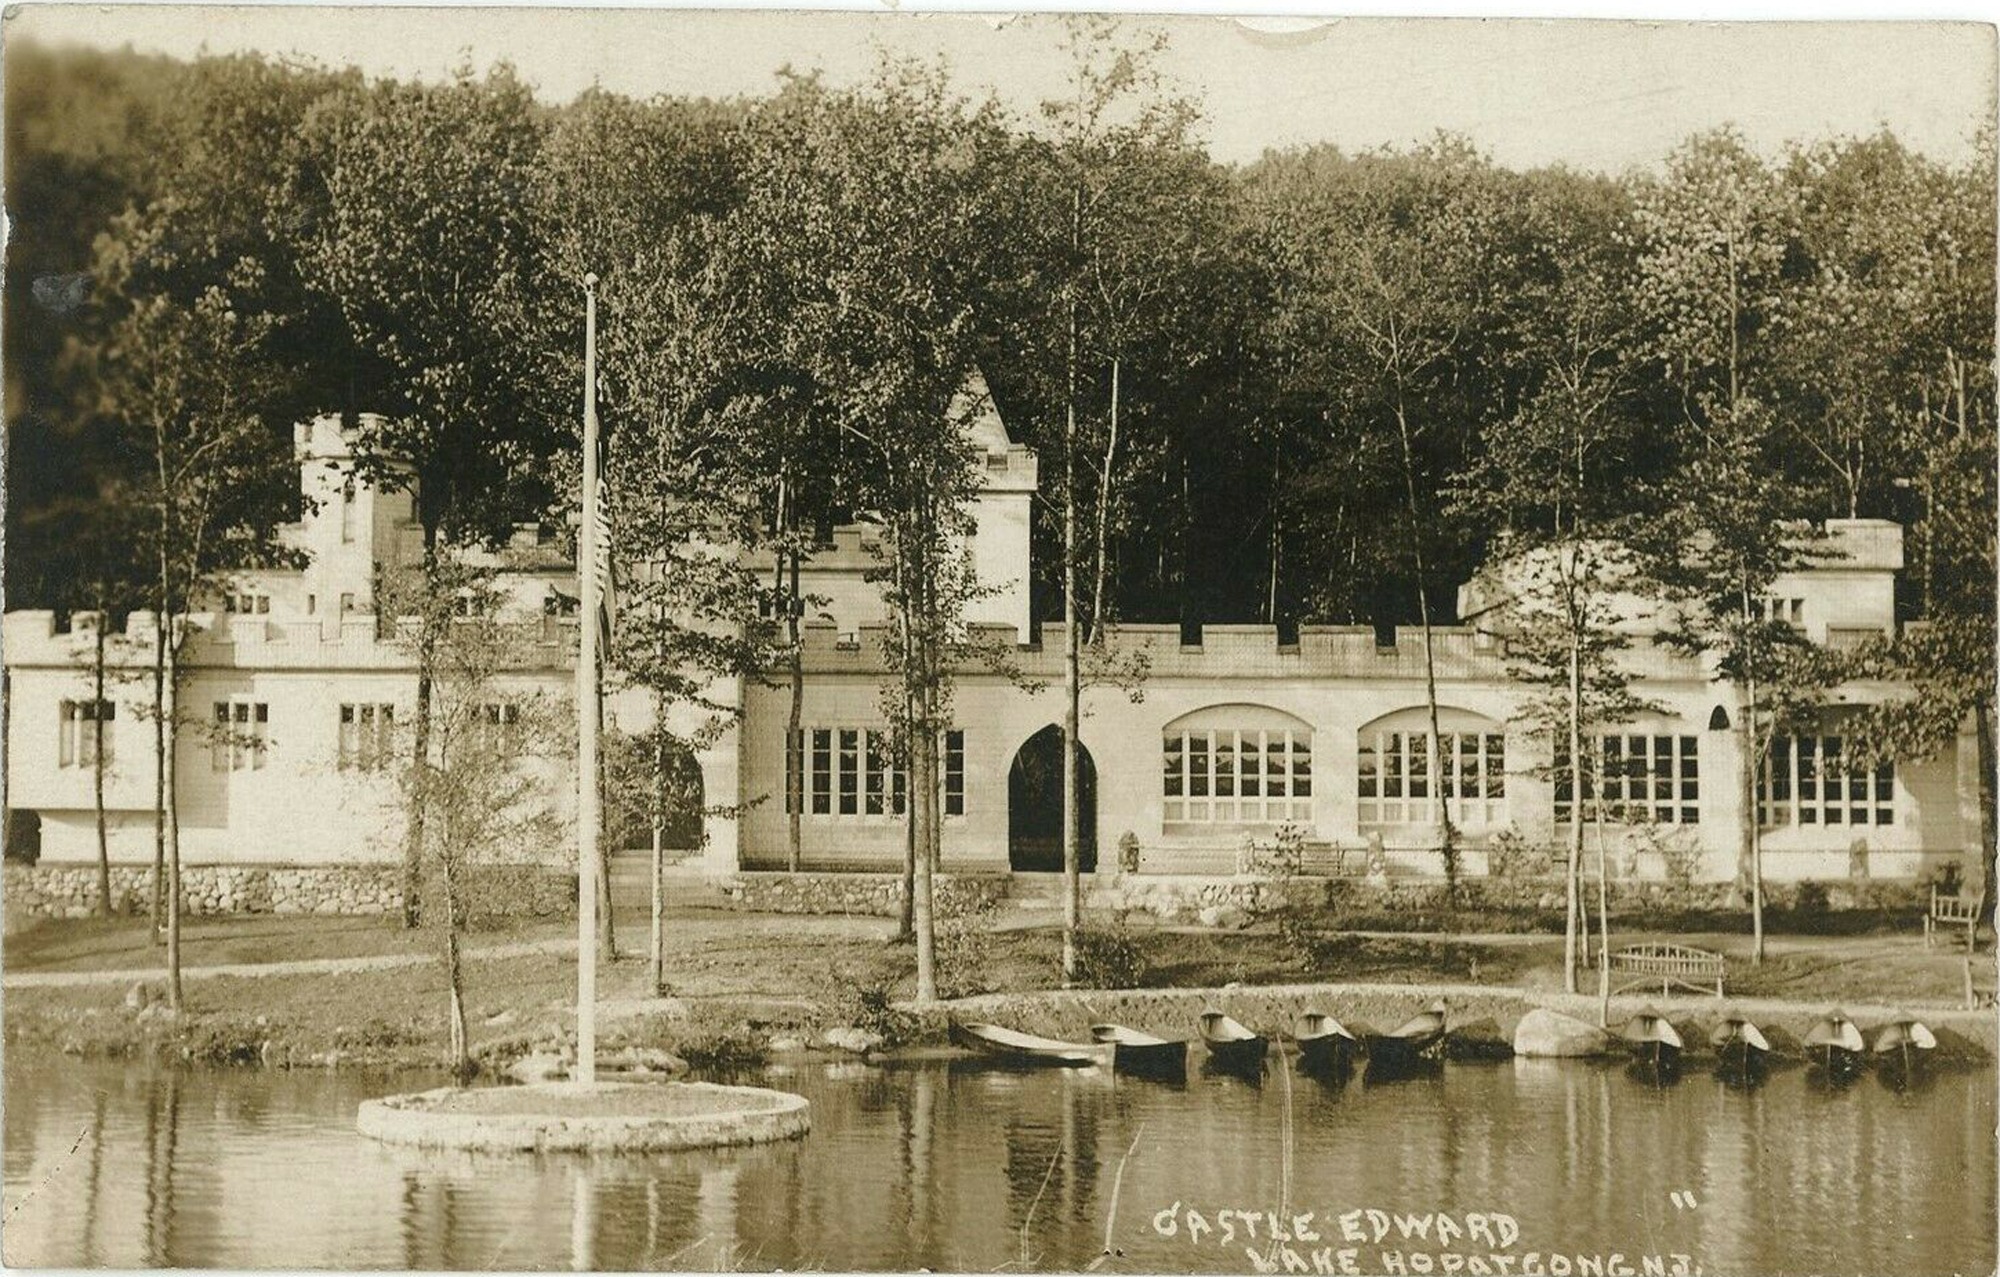 Lake Hopatcong - Castle Edwards - c 1910